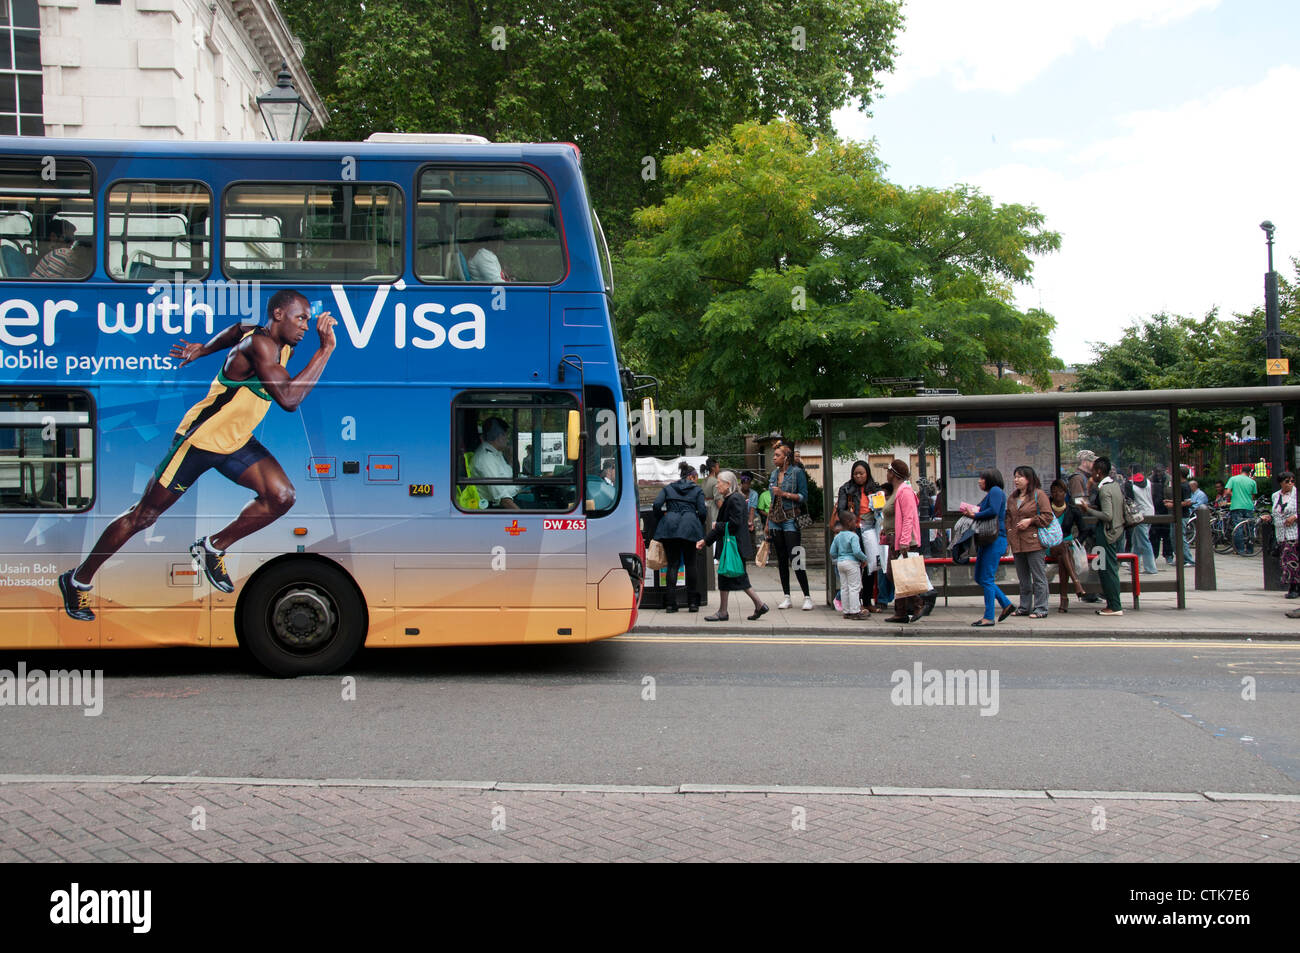 Arrêt de bus chemin étroit d'Hackney. Annonce pour carte Visa avec Usain Bolt, à côté de la file d'attente pour le bus. Banque D'Images